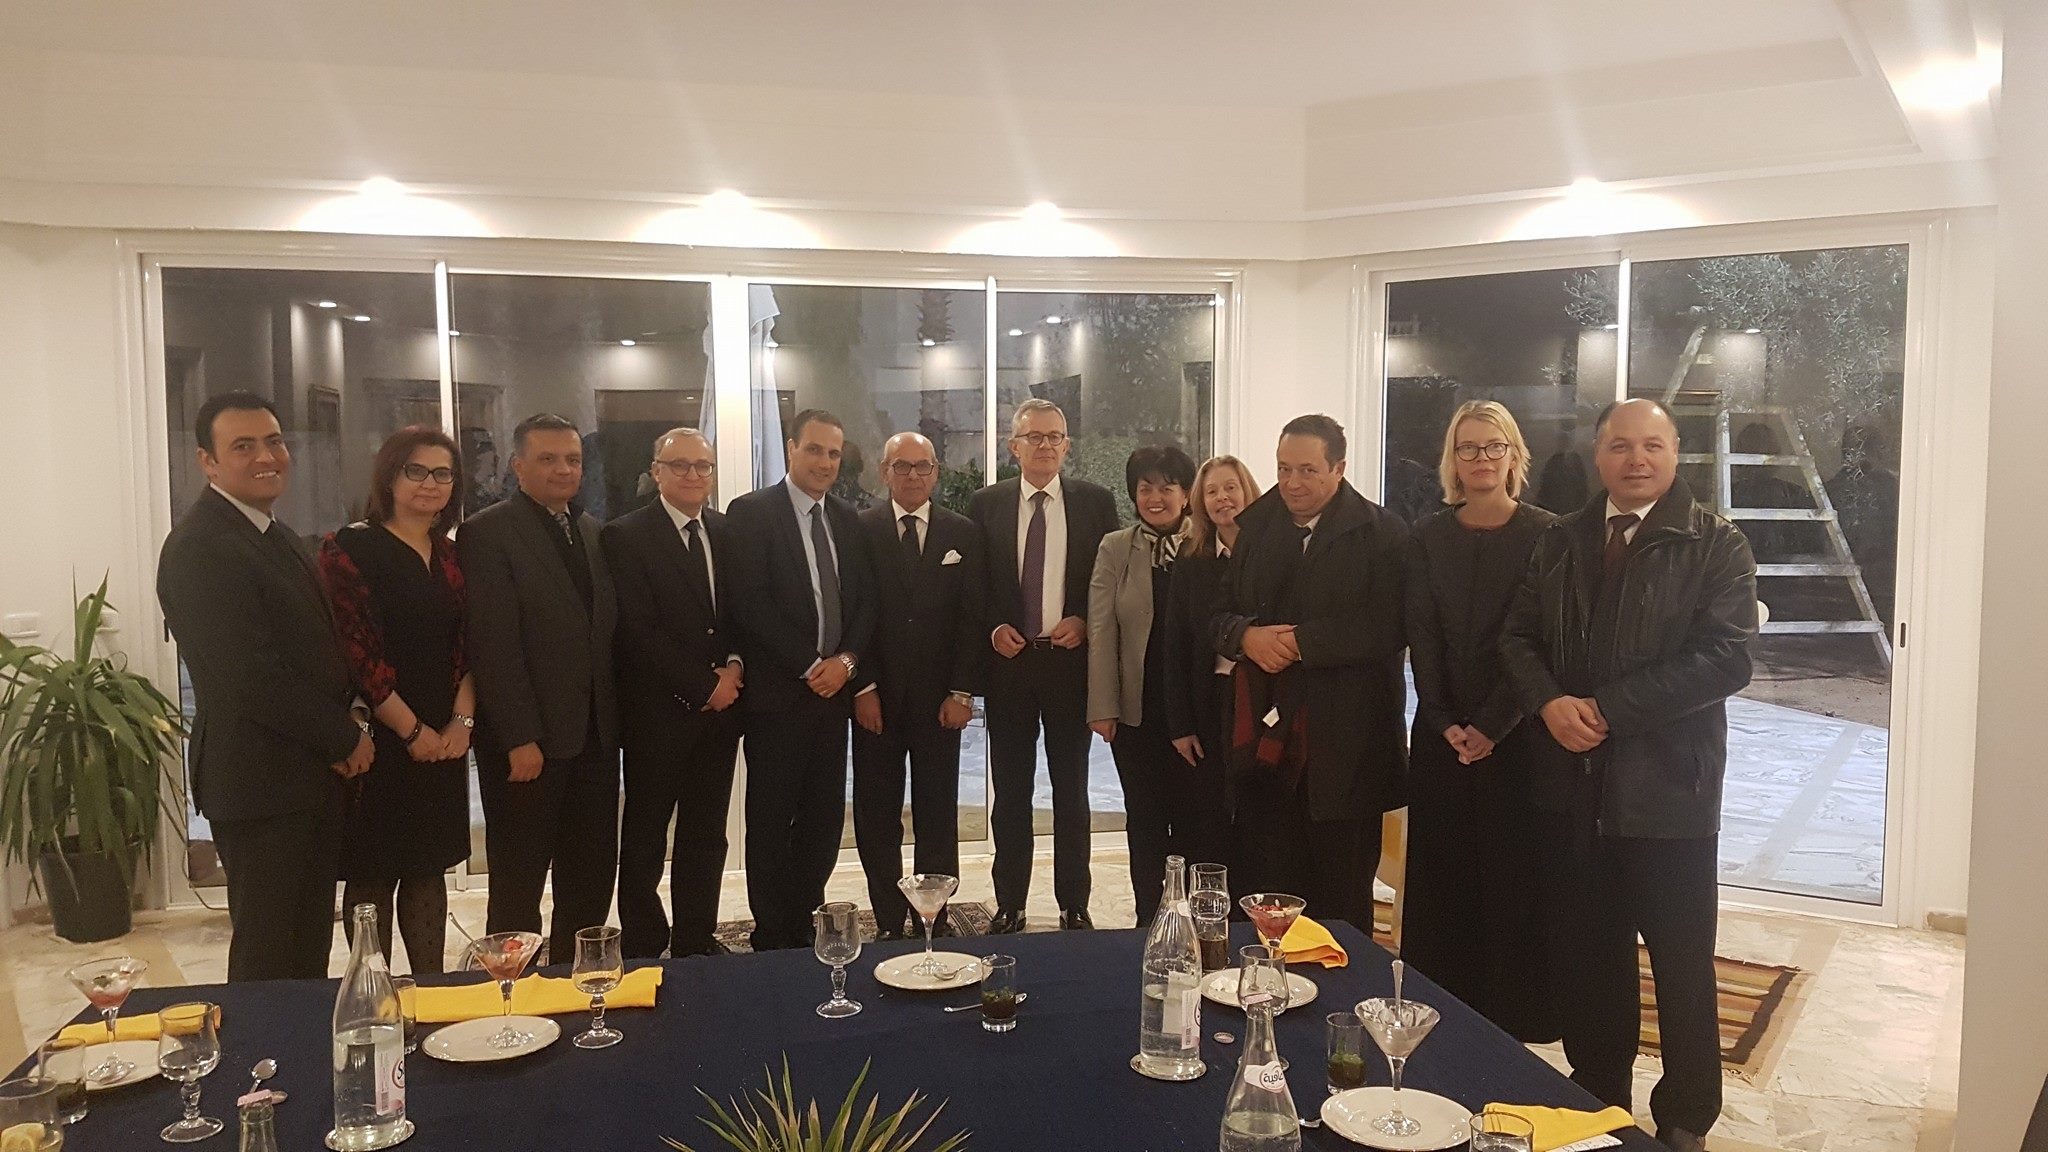 سفير ألمانيا بتونس يزور صفاقس لإحداث مشروع "صفاقس قطب التميز" بالشراكة مع مقاطعة بادن فورتمبيرغ الالمانية